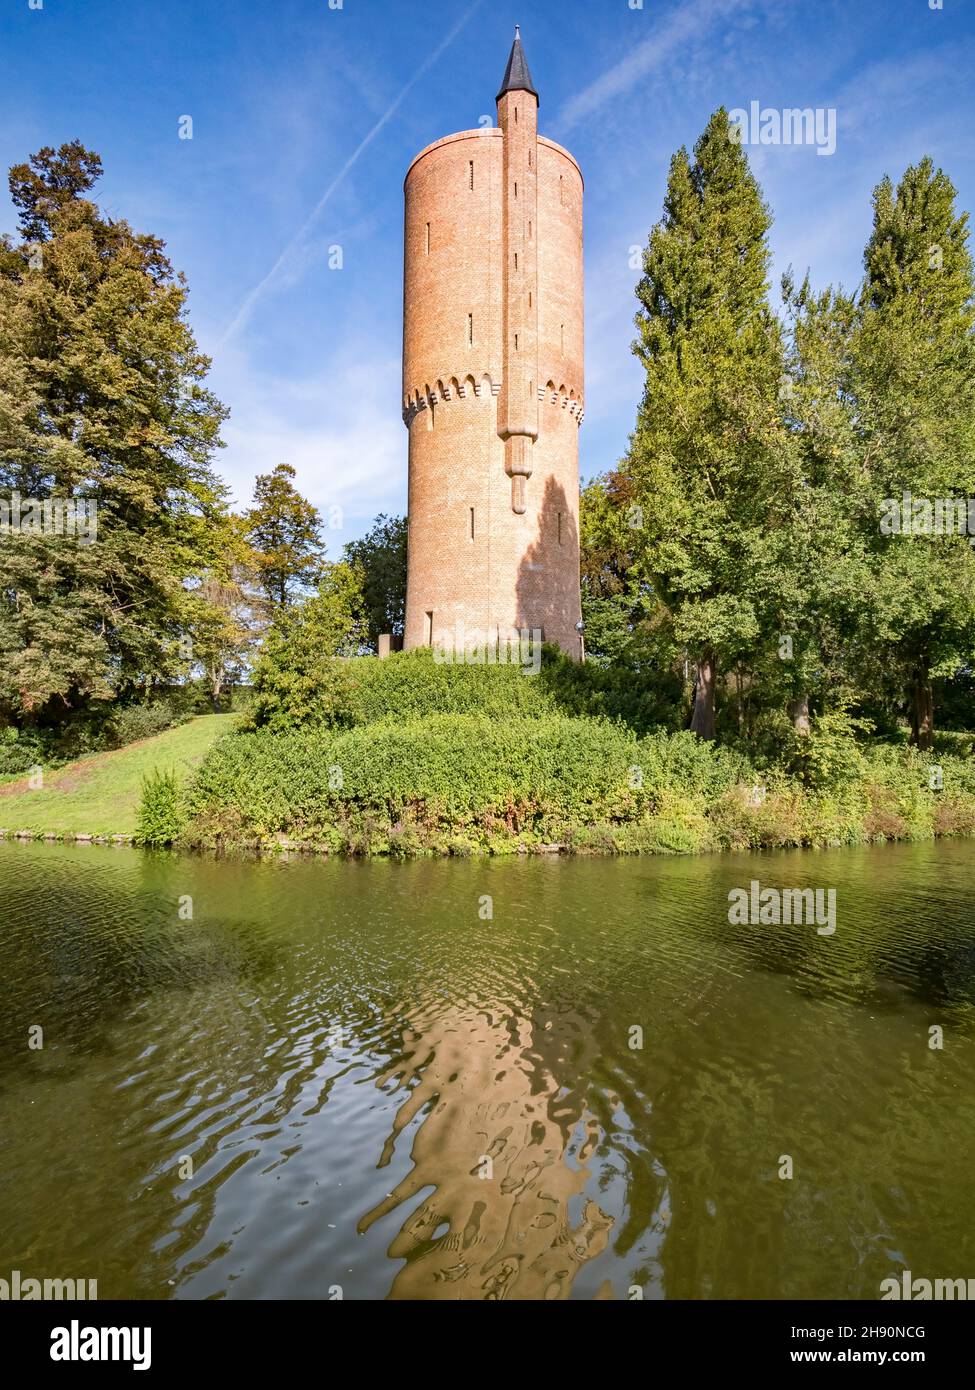 La Tour poudrière, construite en 1401 comme réserve de poudre et faisant partie des défenses de la ville de Bruges, Flandre Occidentale, Belgique. Banque D'Images